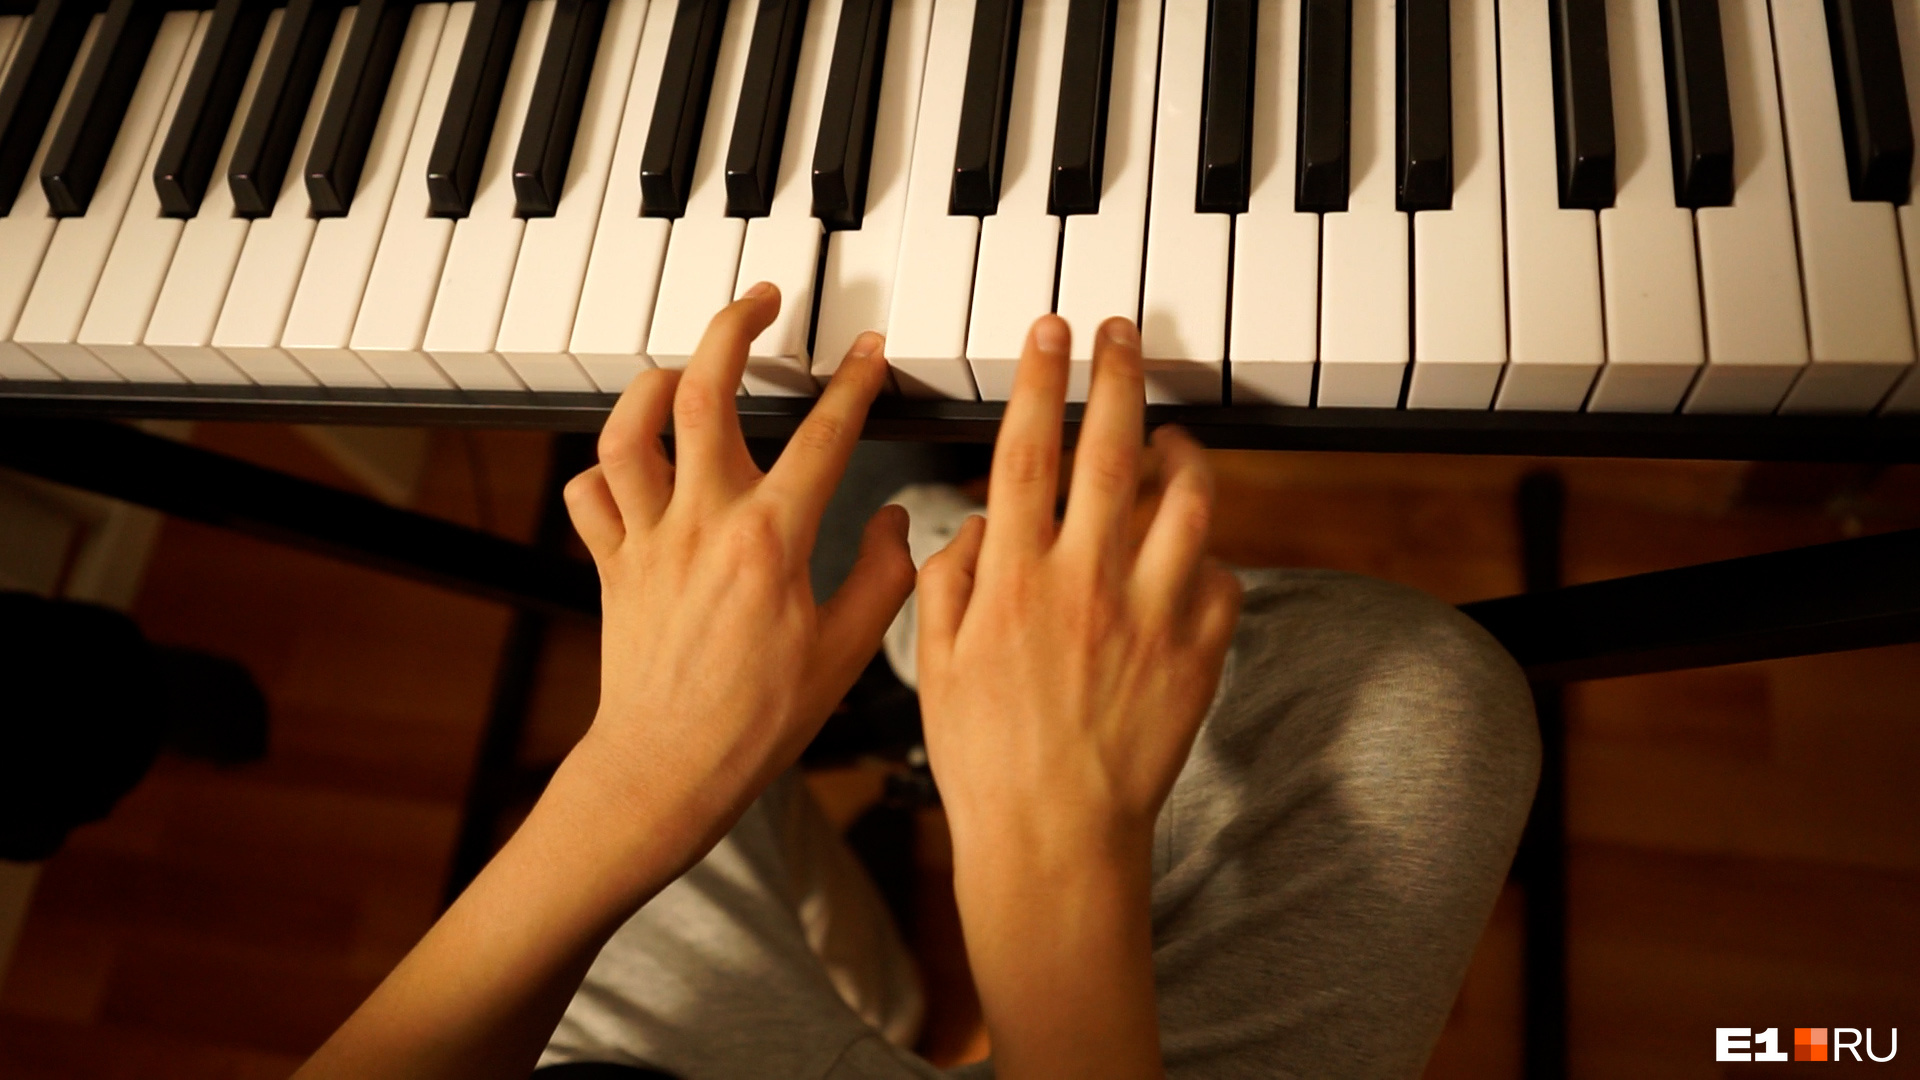 «Как это возможно?» В Екатеринбурге мальчик с аутизмом сам научился играть на синтезаторе и сочинять музыку